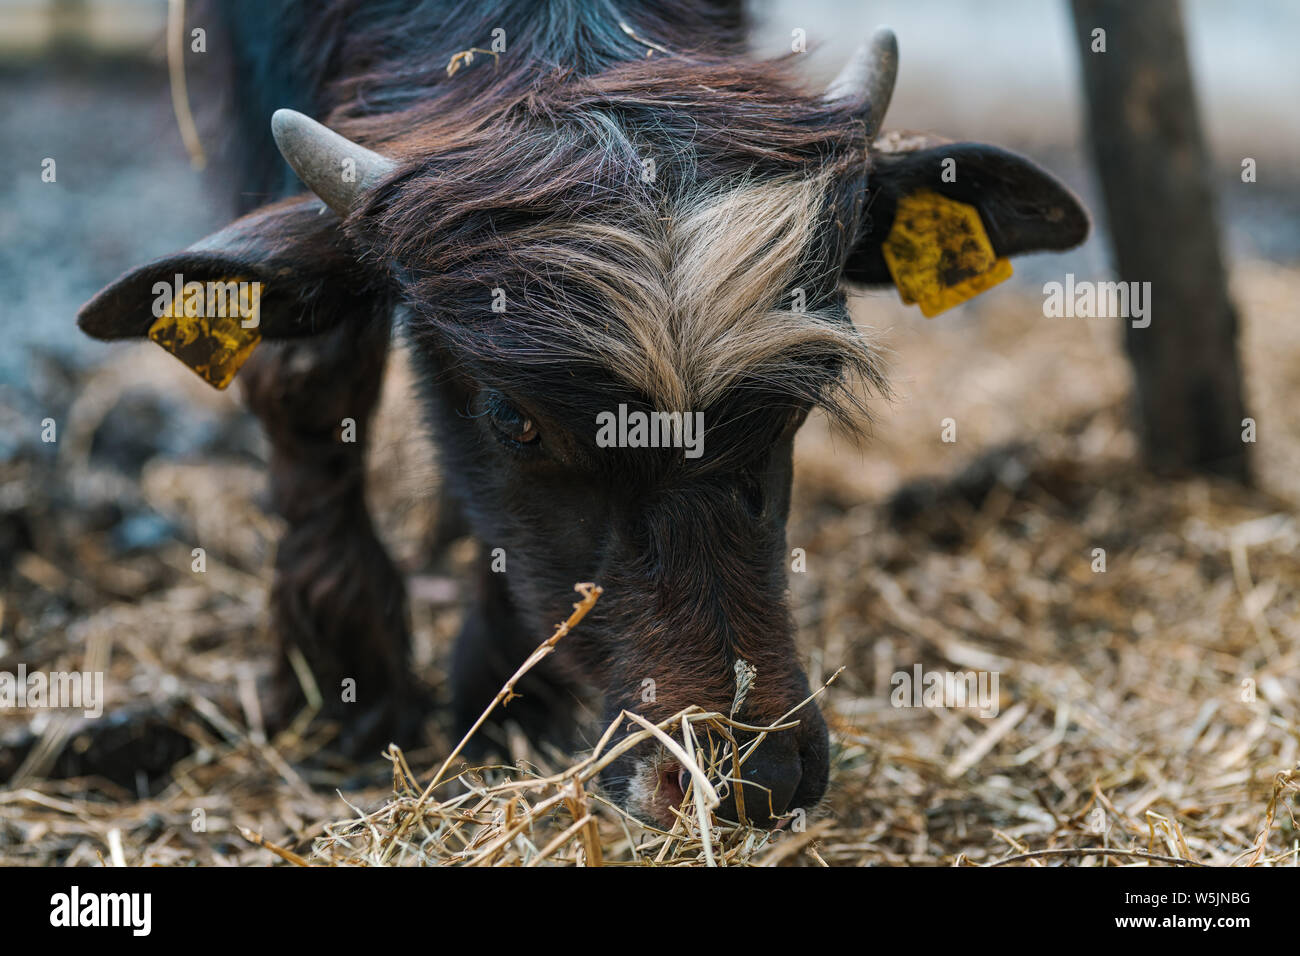 Inländische Wasserbüffel in Farm Paddock, Tierhaltung Tierhaltung Stockfoto